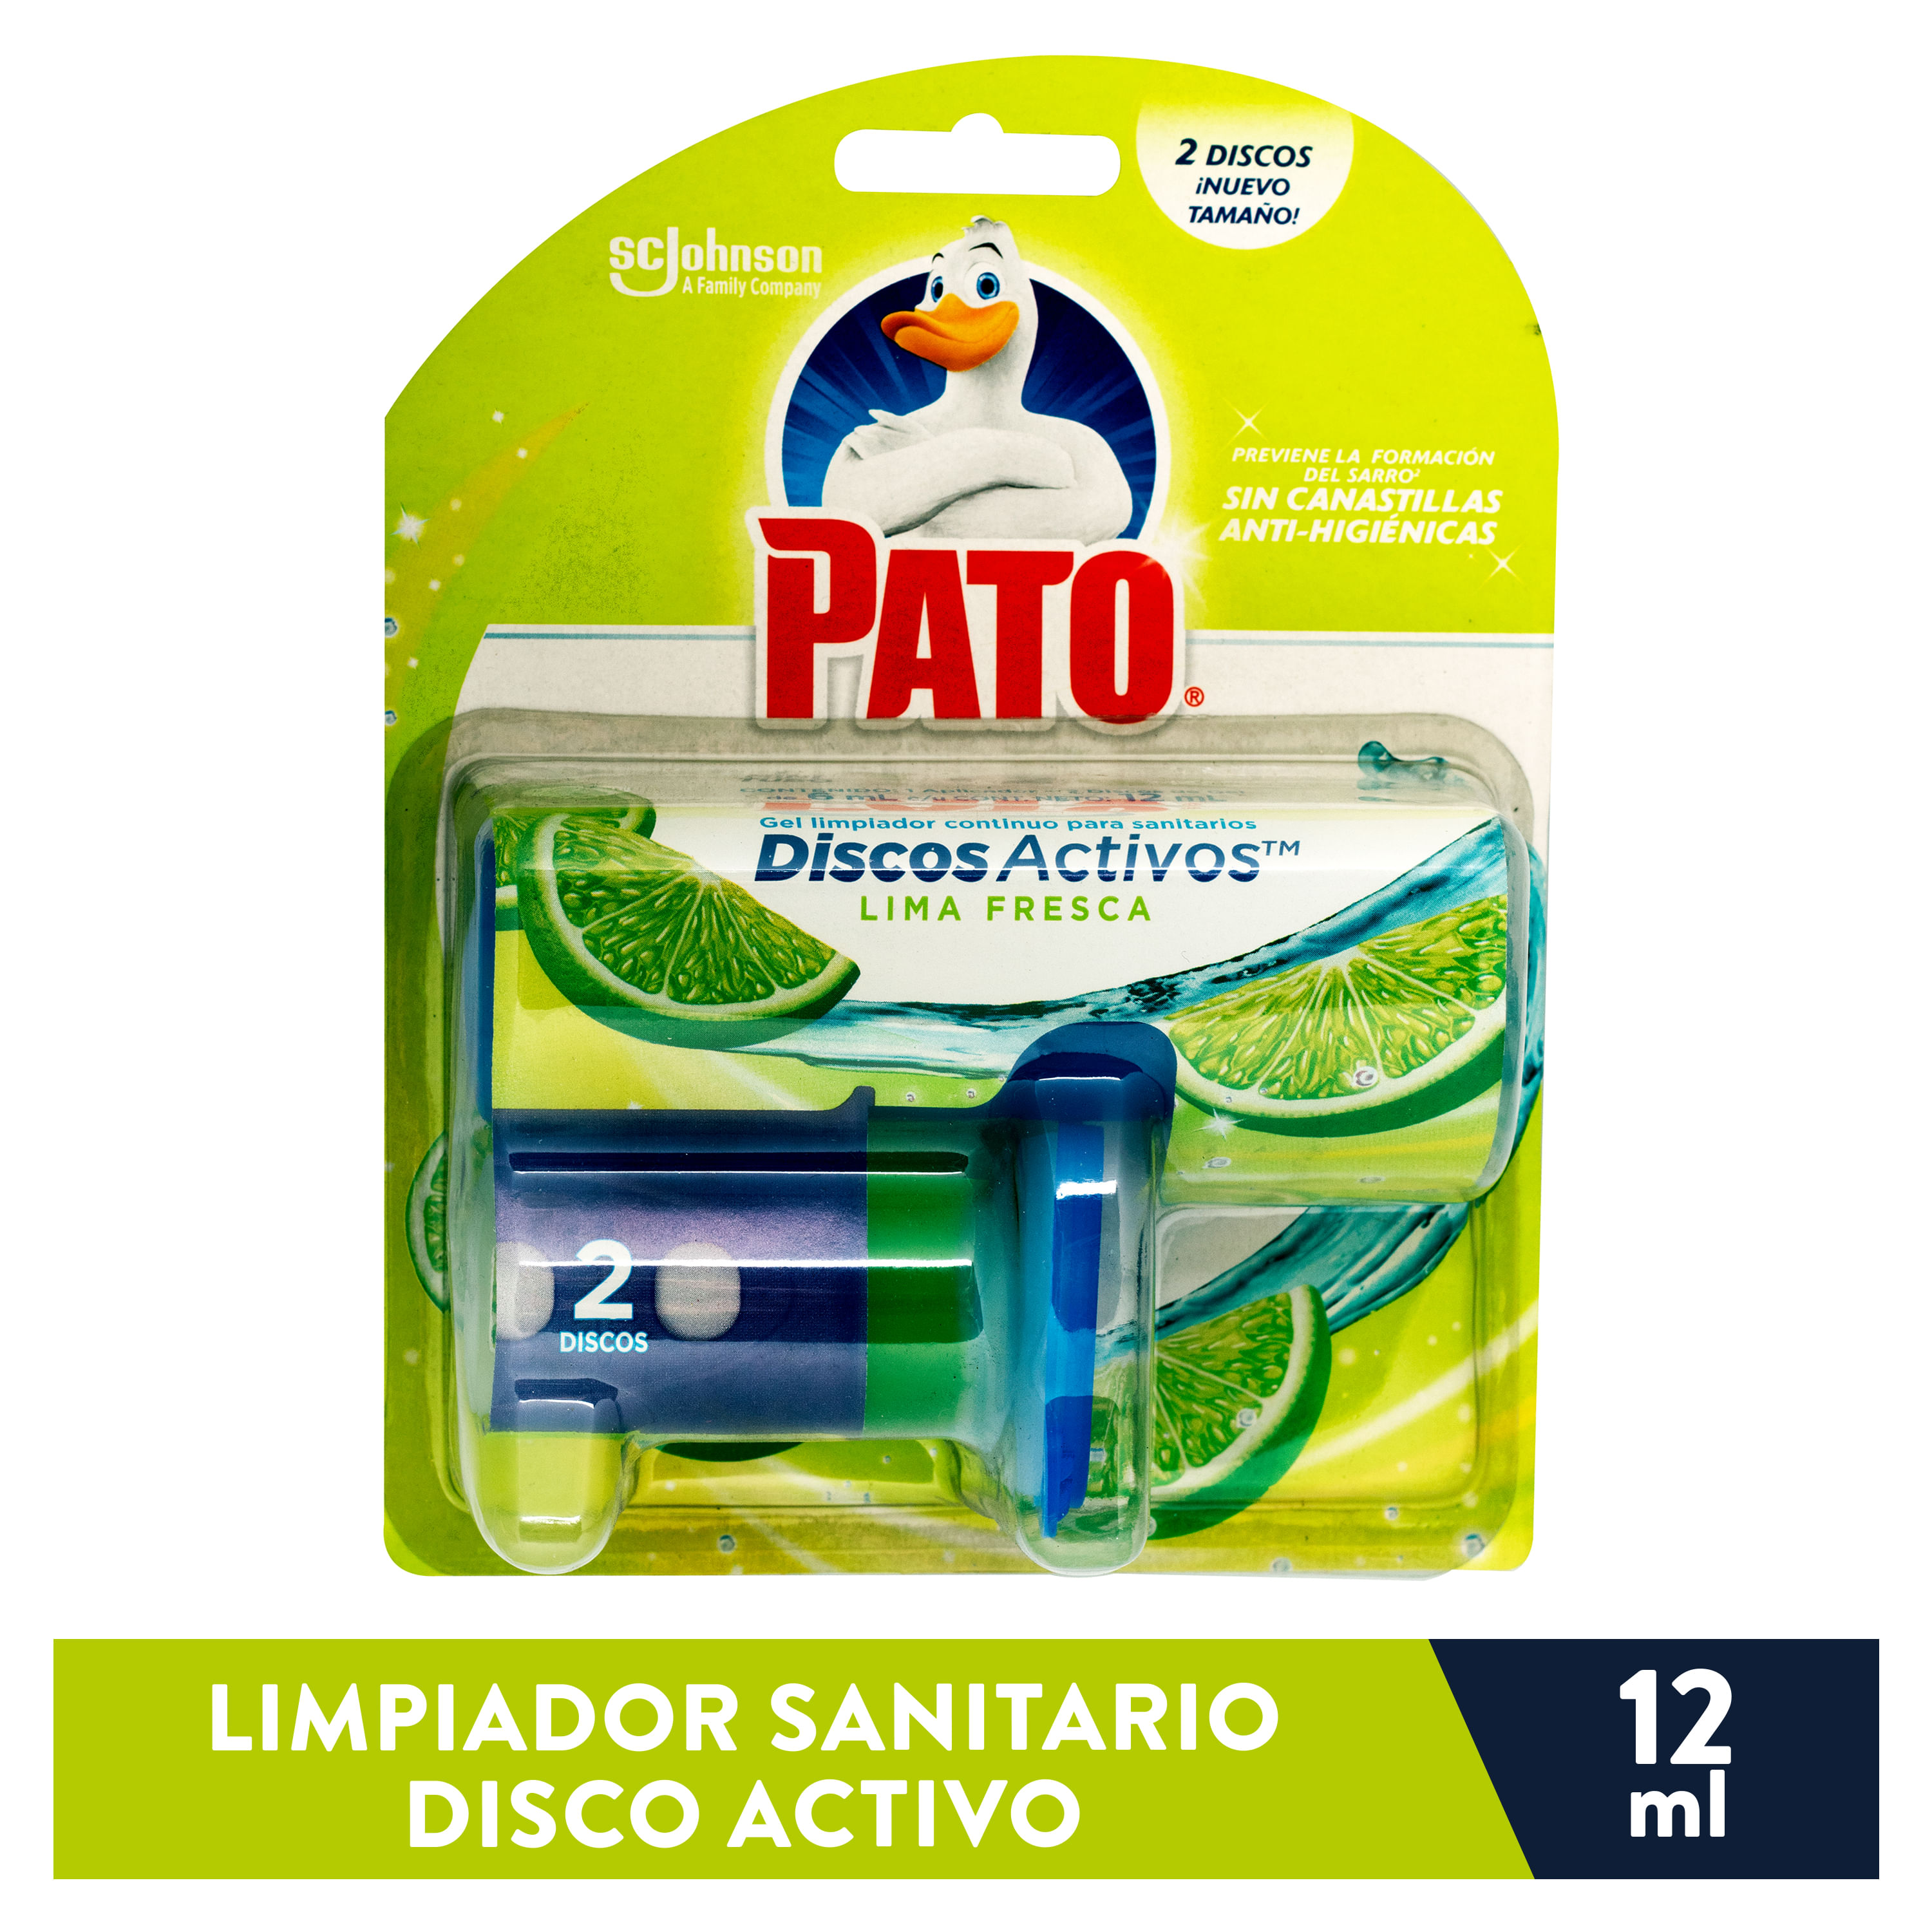 Pato Limpiador Wc Discos Activos 4 In 1 Lima Recambio Limpiador wc